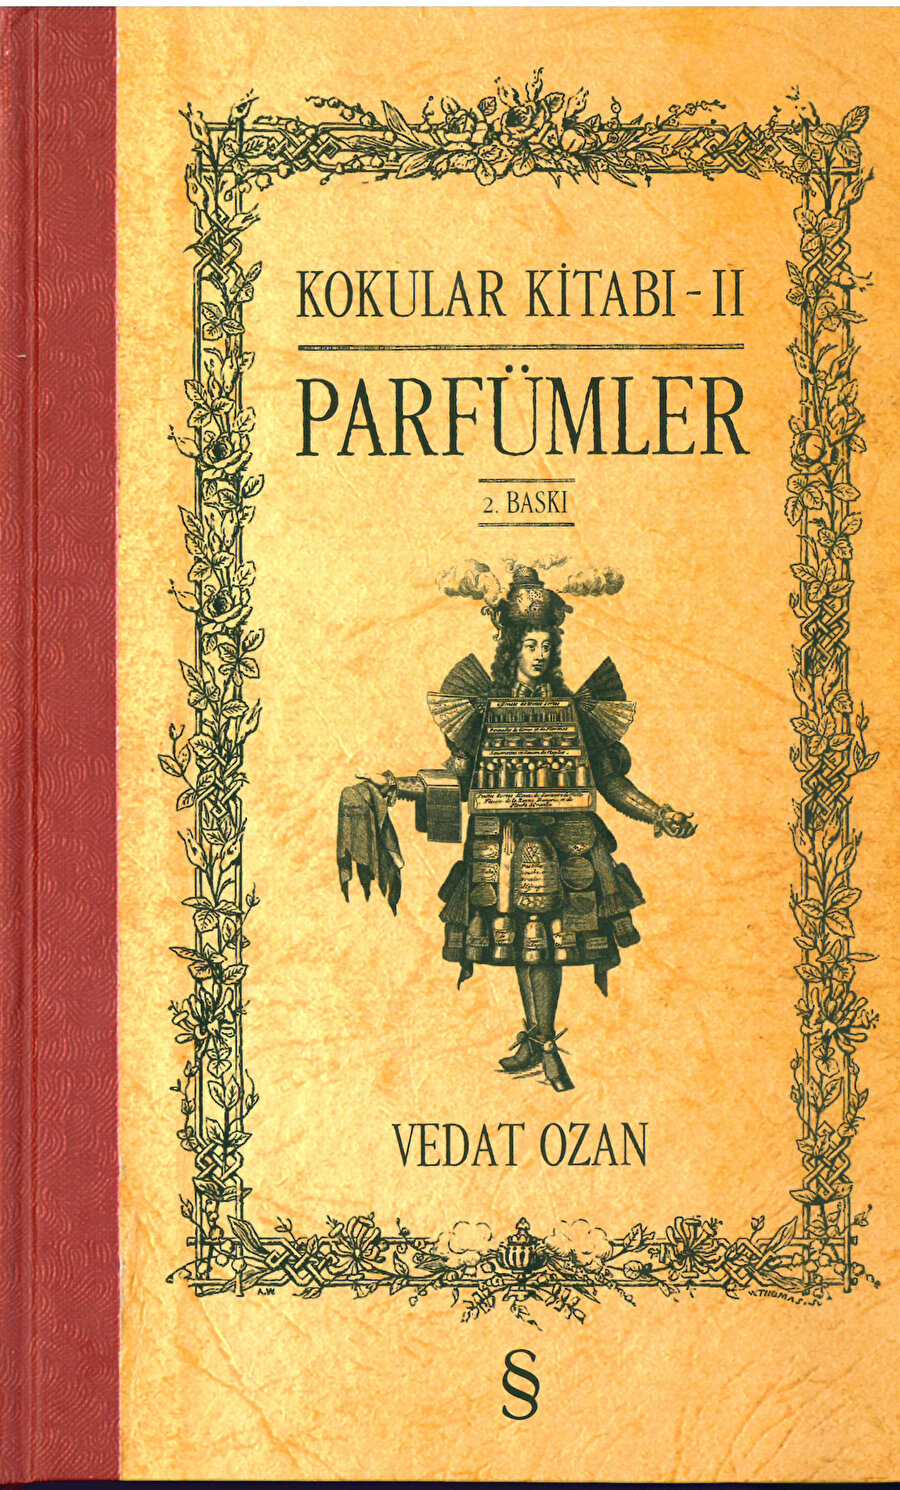 Kokular Kitabı-2 Parfümler, Sedat Ozan.